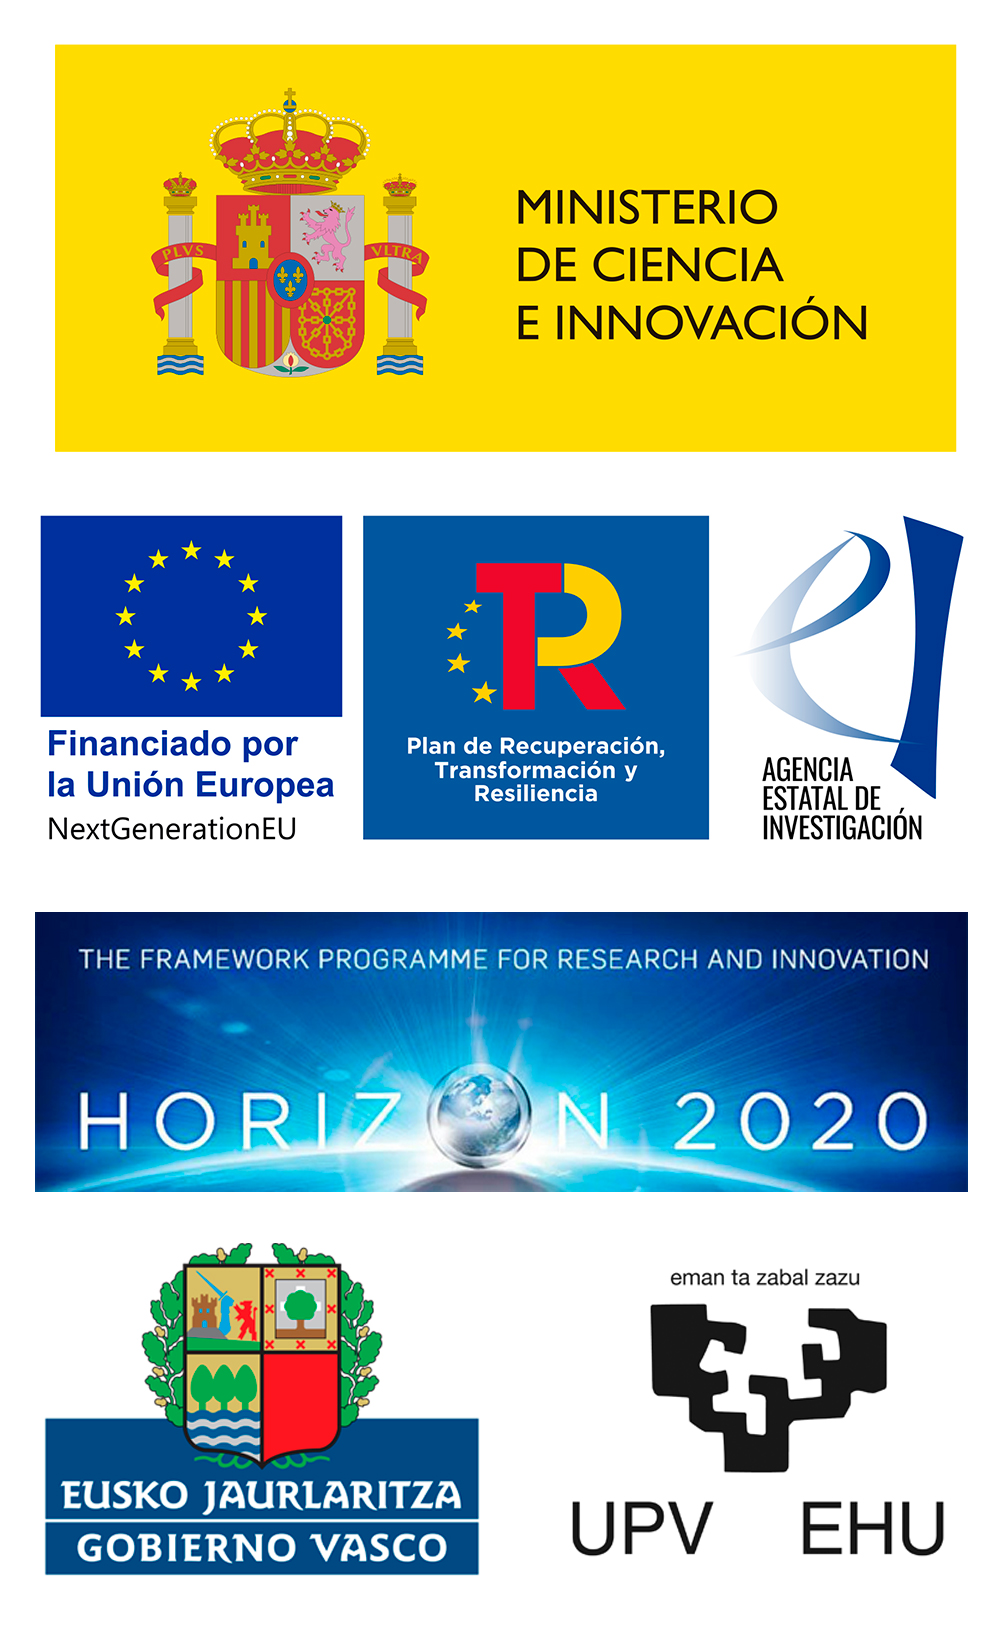 Ministerio de Ciencia e Innovación + Horizon 2020 + Gobierno Vasco + UPV/EHU